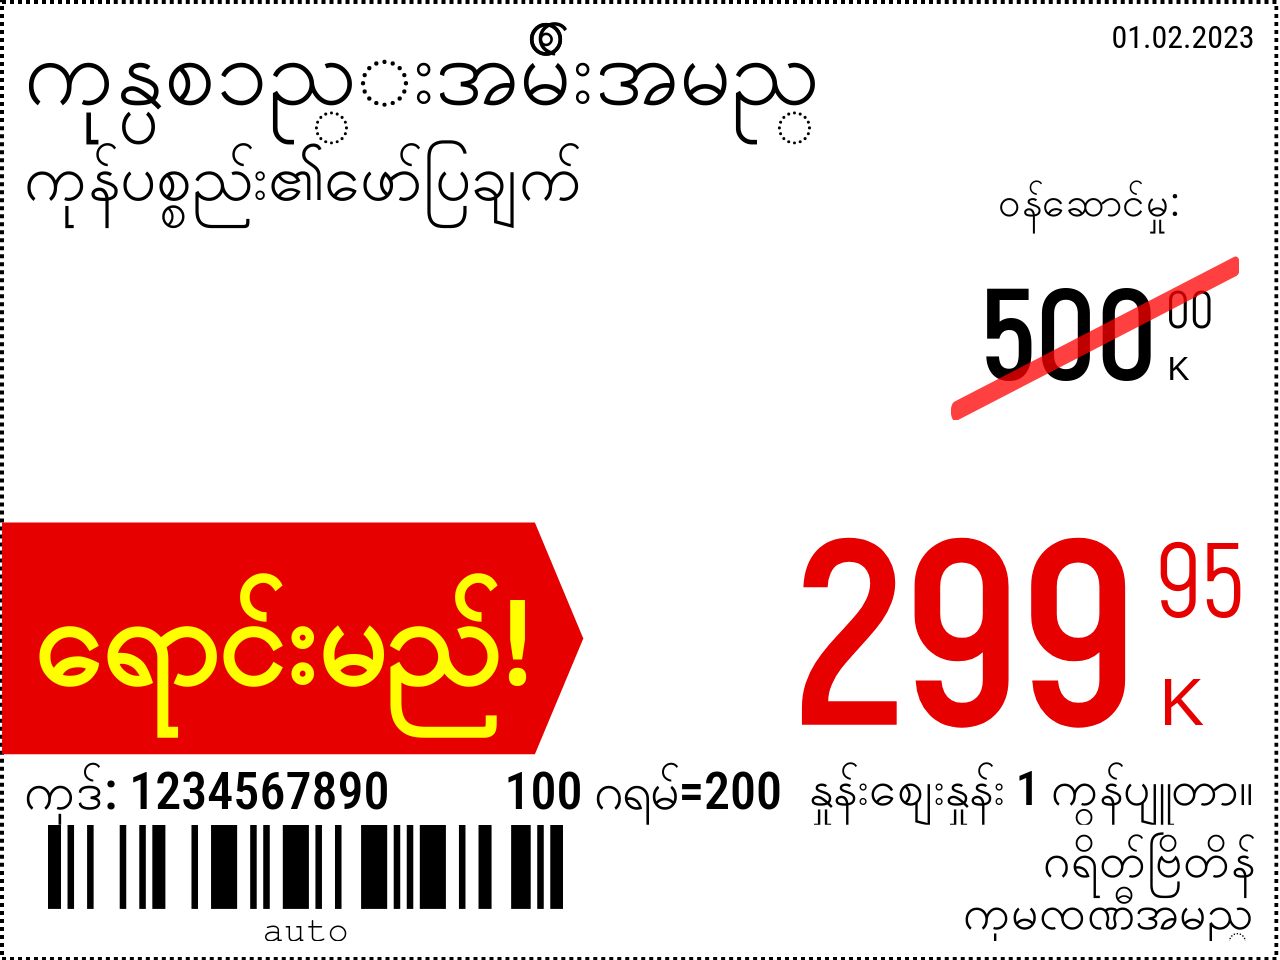 မြန်မာဘာသာ အသစ် / 8x6 / ပရိုမိုးရှင်း 2